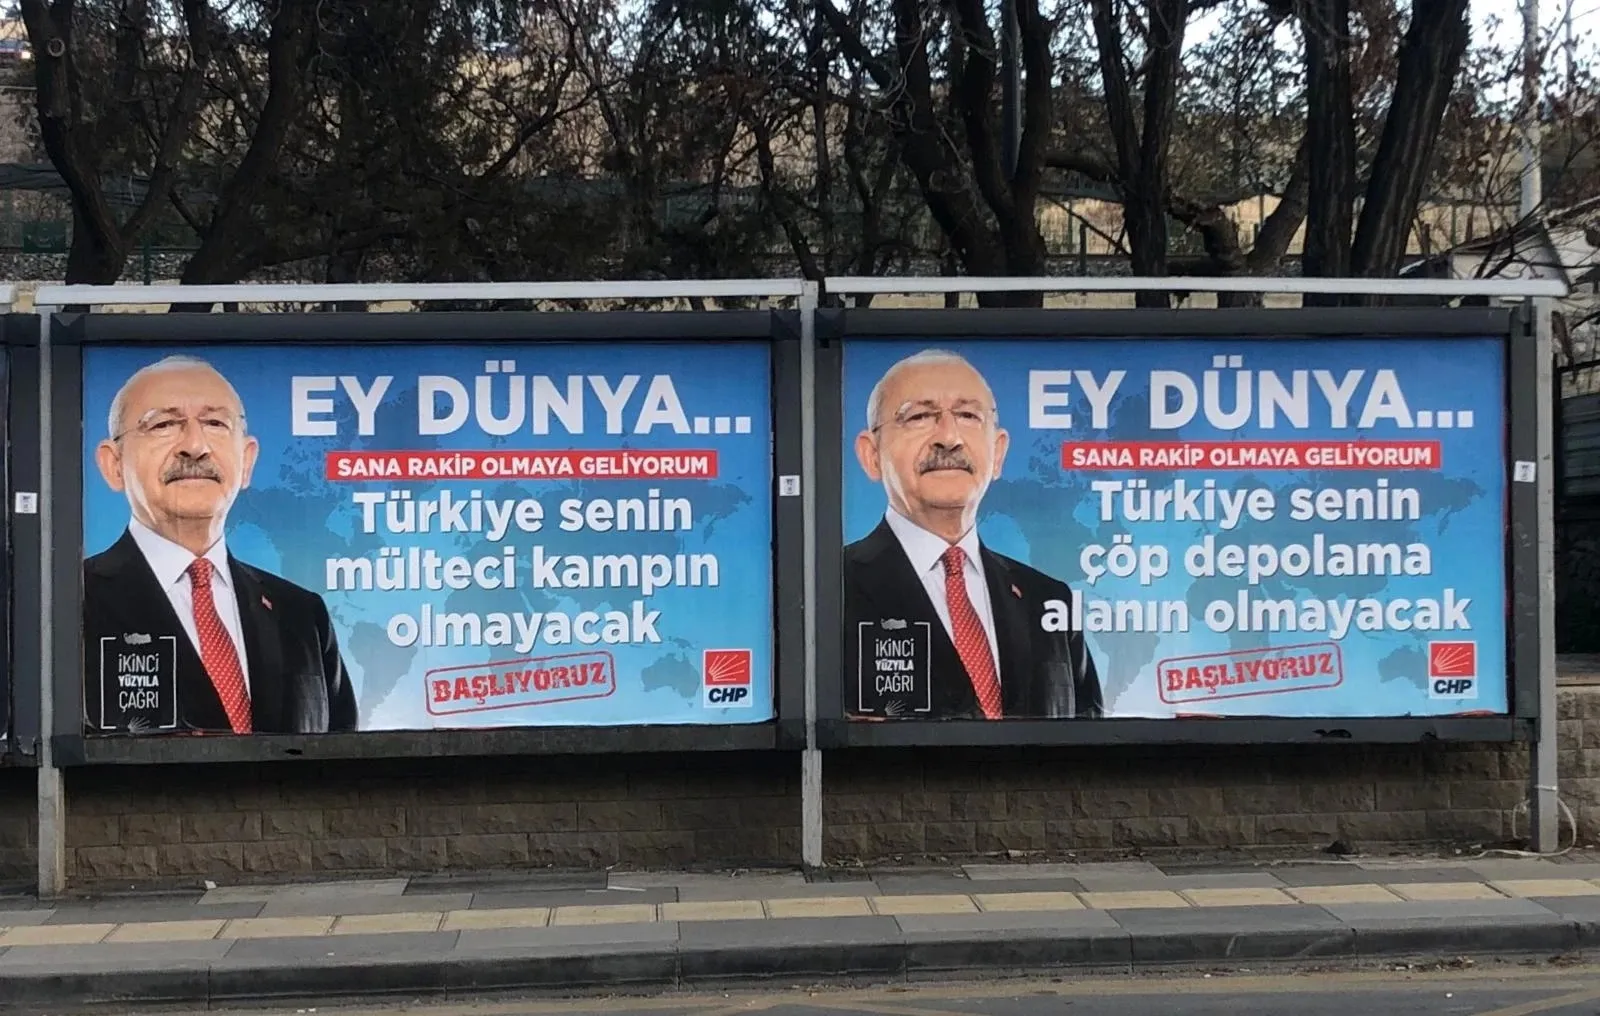 حزب "الشعب الجمهوري" يُطلق حملة عنصرية لترحيل اللاجئين السوريين في تركيا |  شبكة شام الإخبارية